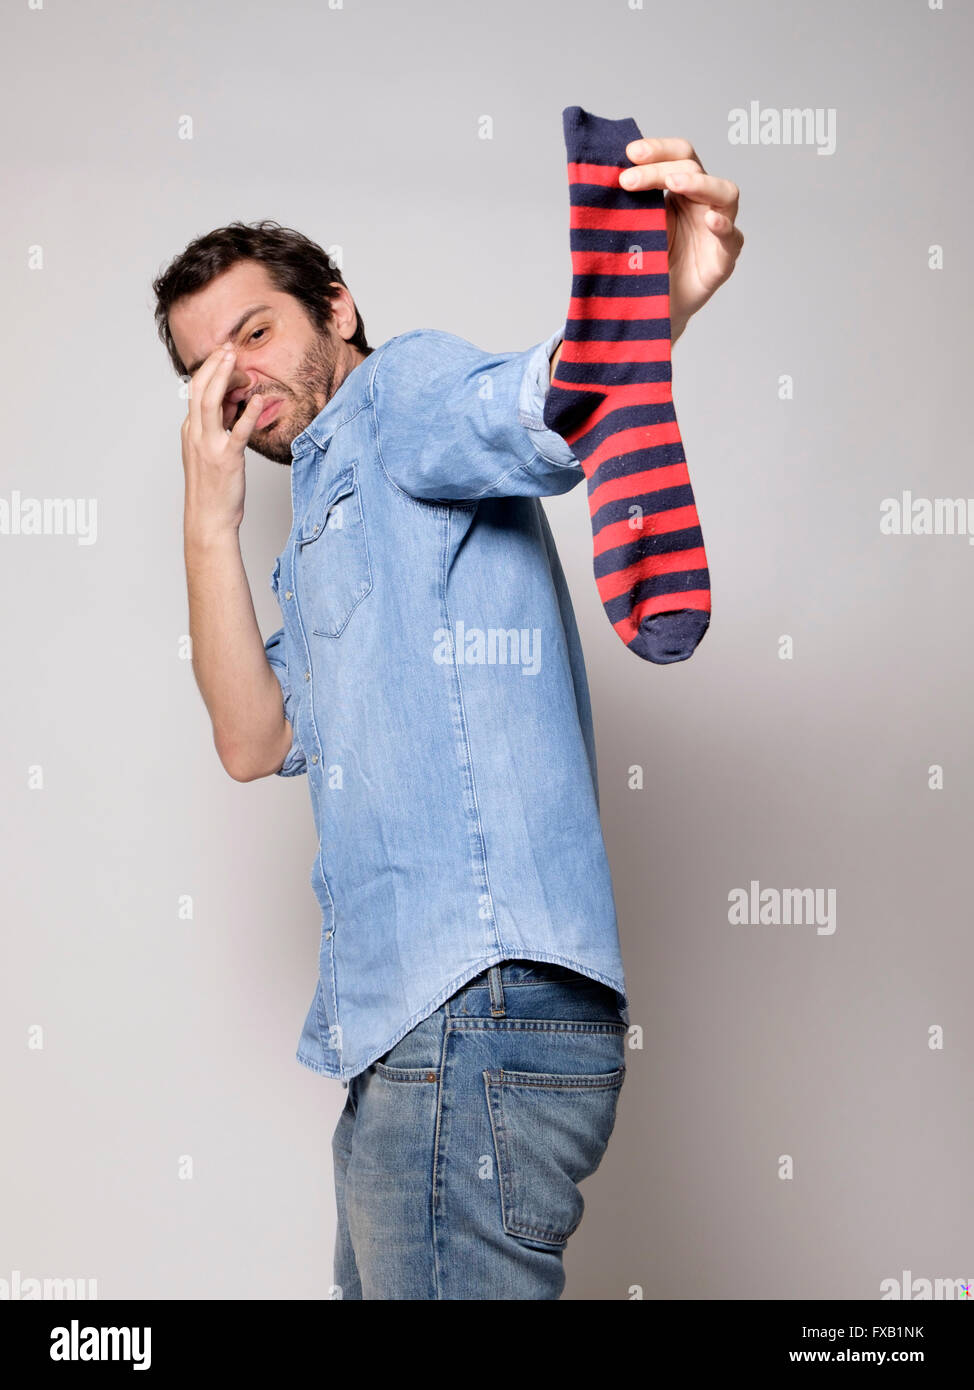 Mann eine stinkende Socken riechen Stockfotografie - Alamy